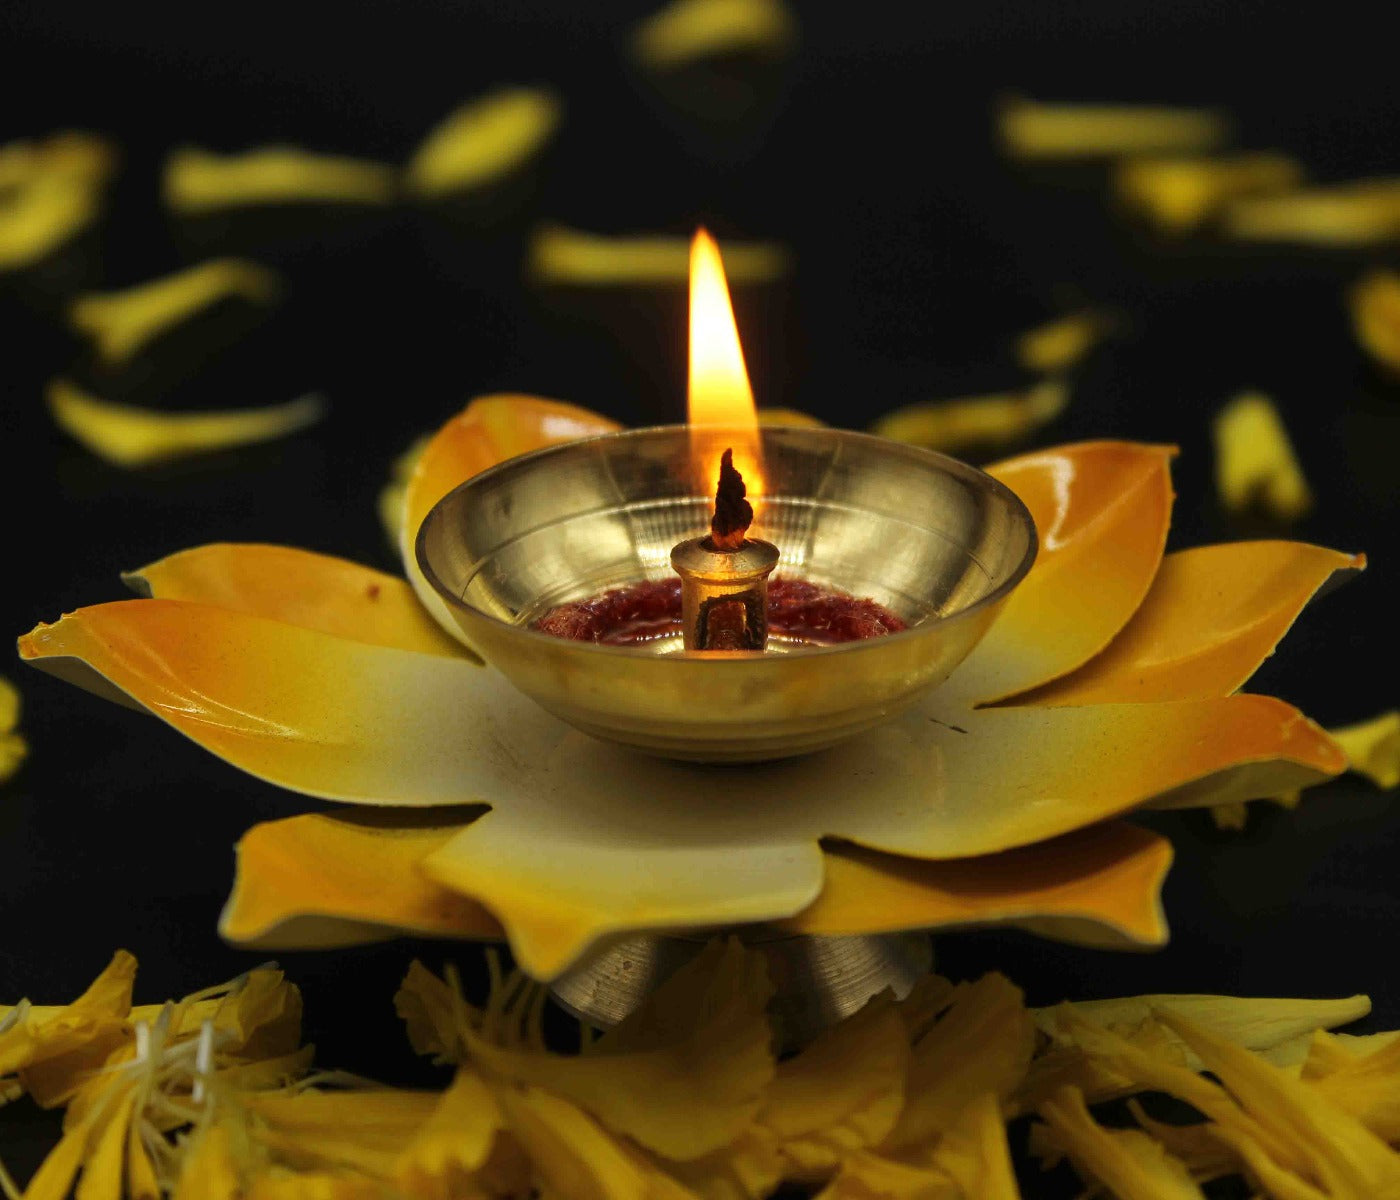 Yellow Lotus Shape Diya For Home/Temple/Pooja Decoration